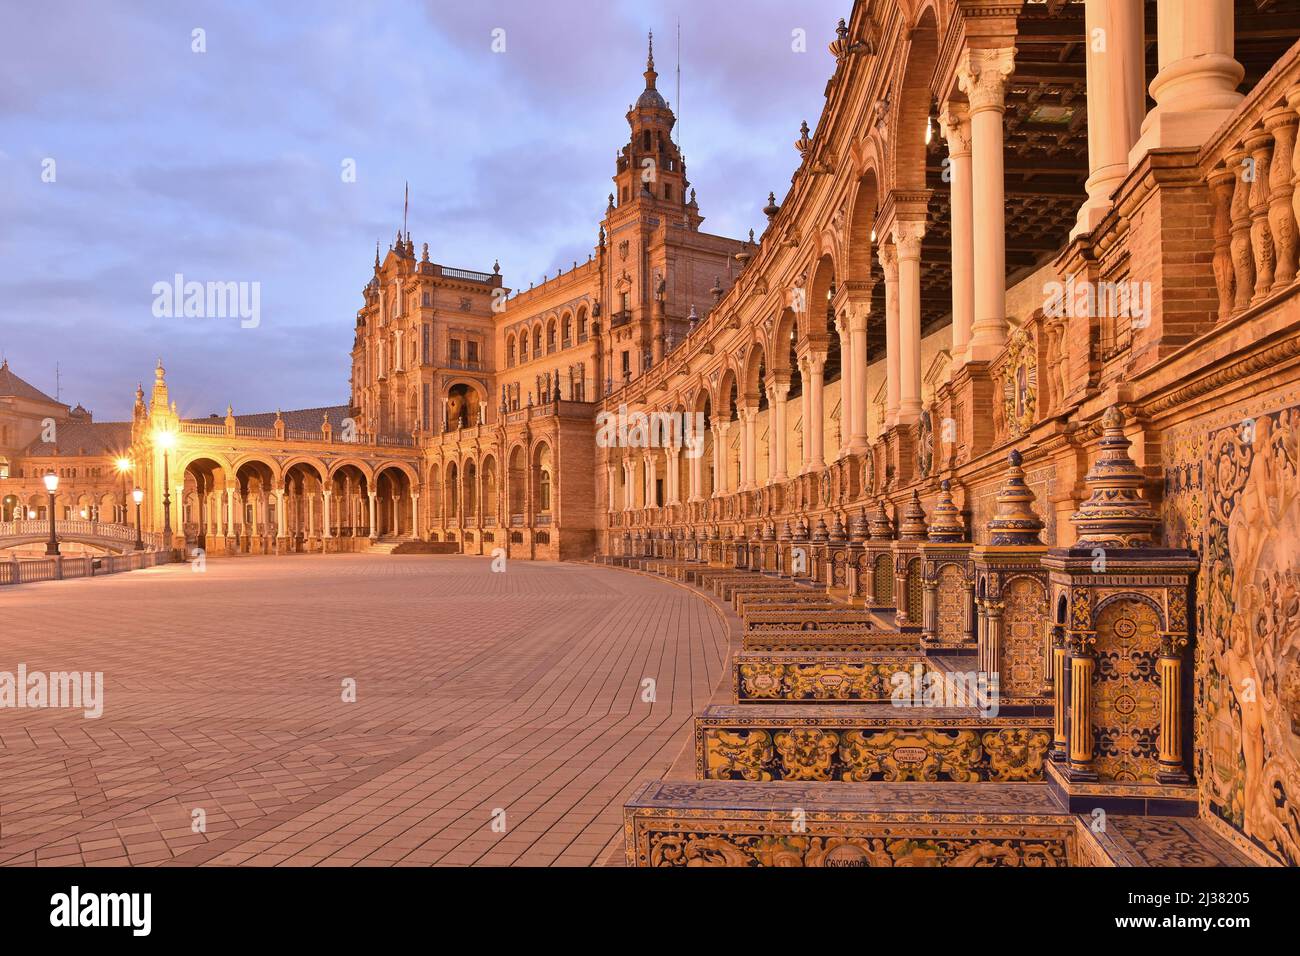 Plaza De Espana - architettura in stile barocco, rinascimentale e moresco all'alba. Situato nel Parco Maria Luisa a Siviglia Andalusia Spagna. Foto Stock